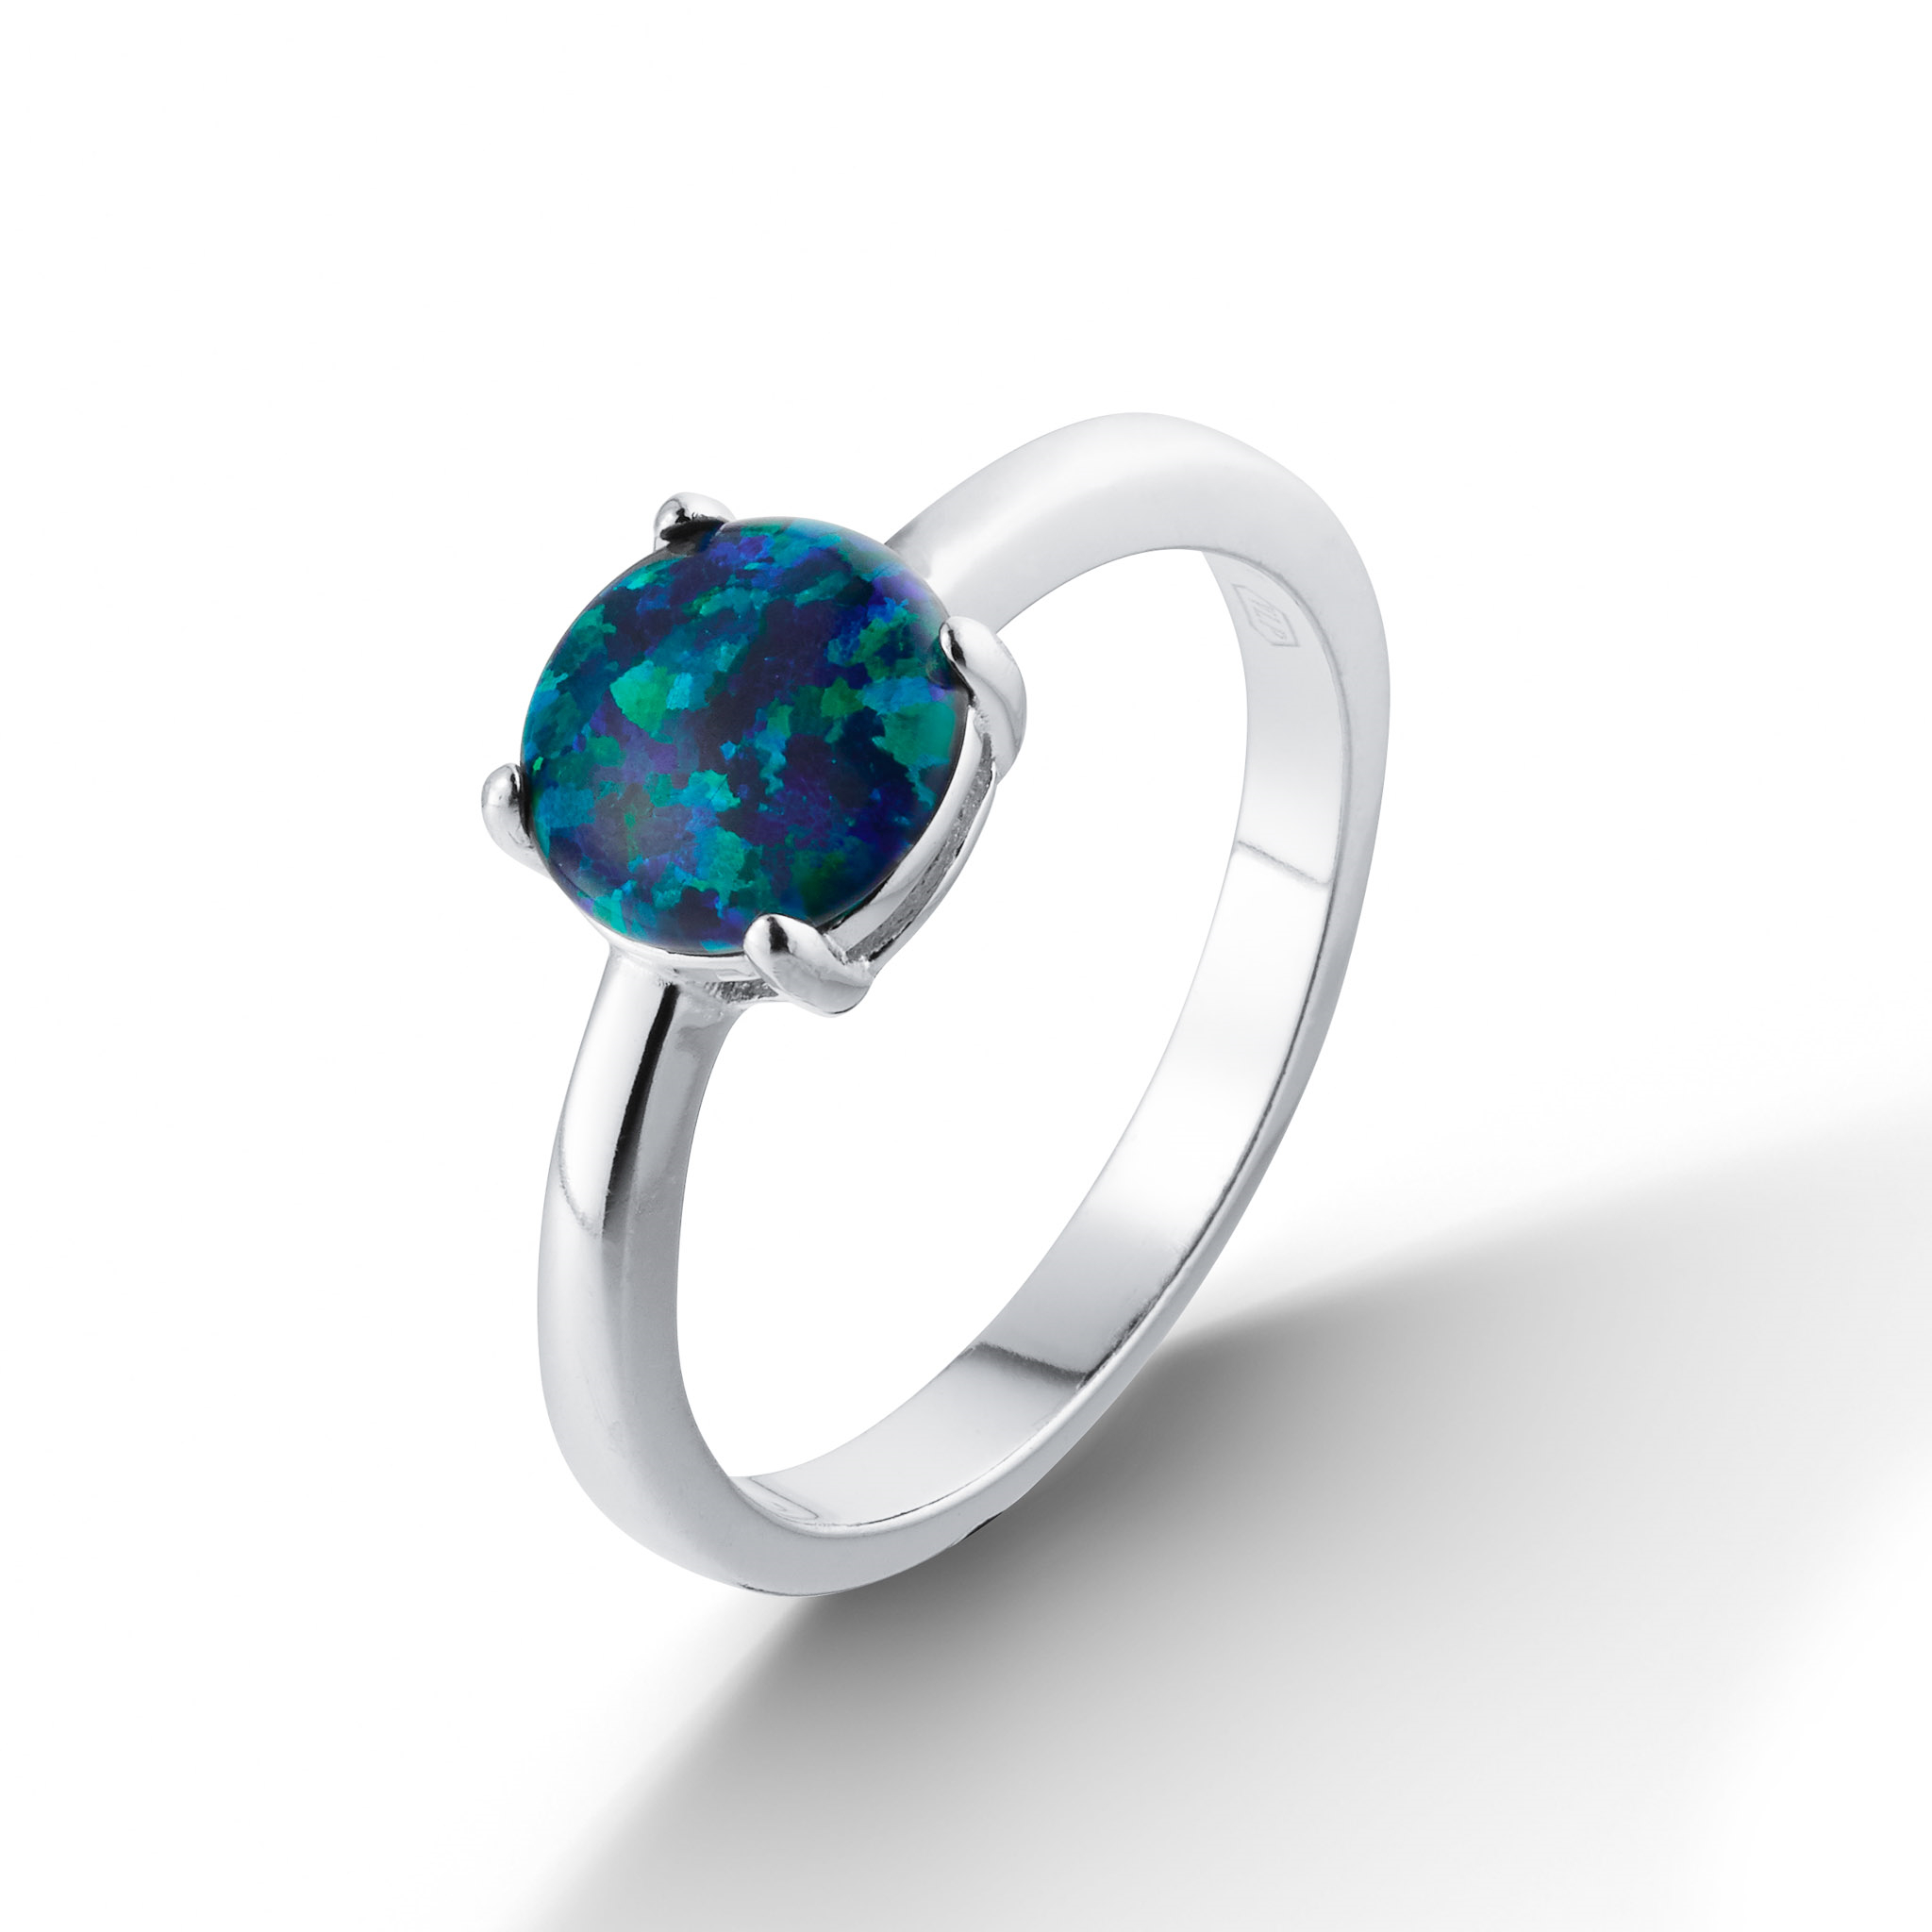 Strieborný prsteň so zeleným opálom